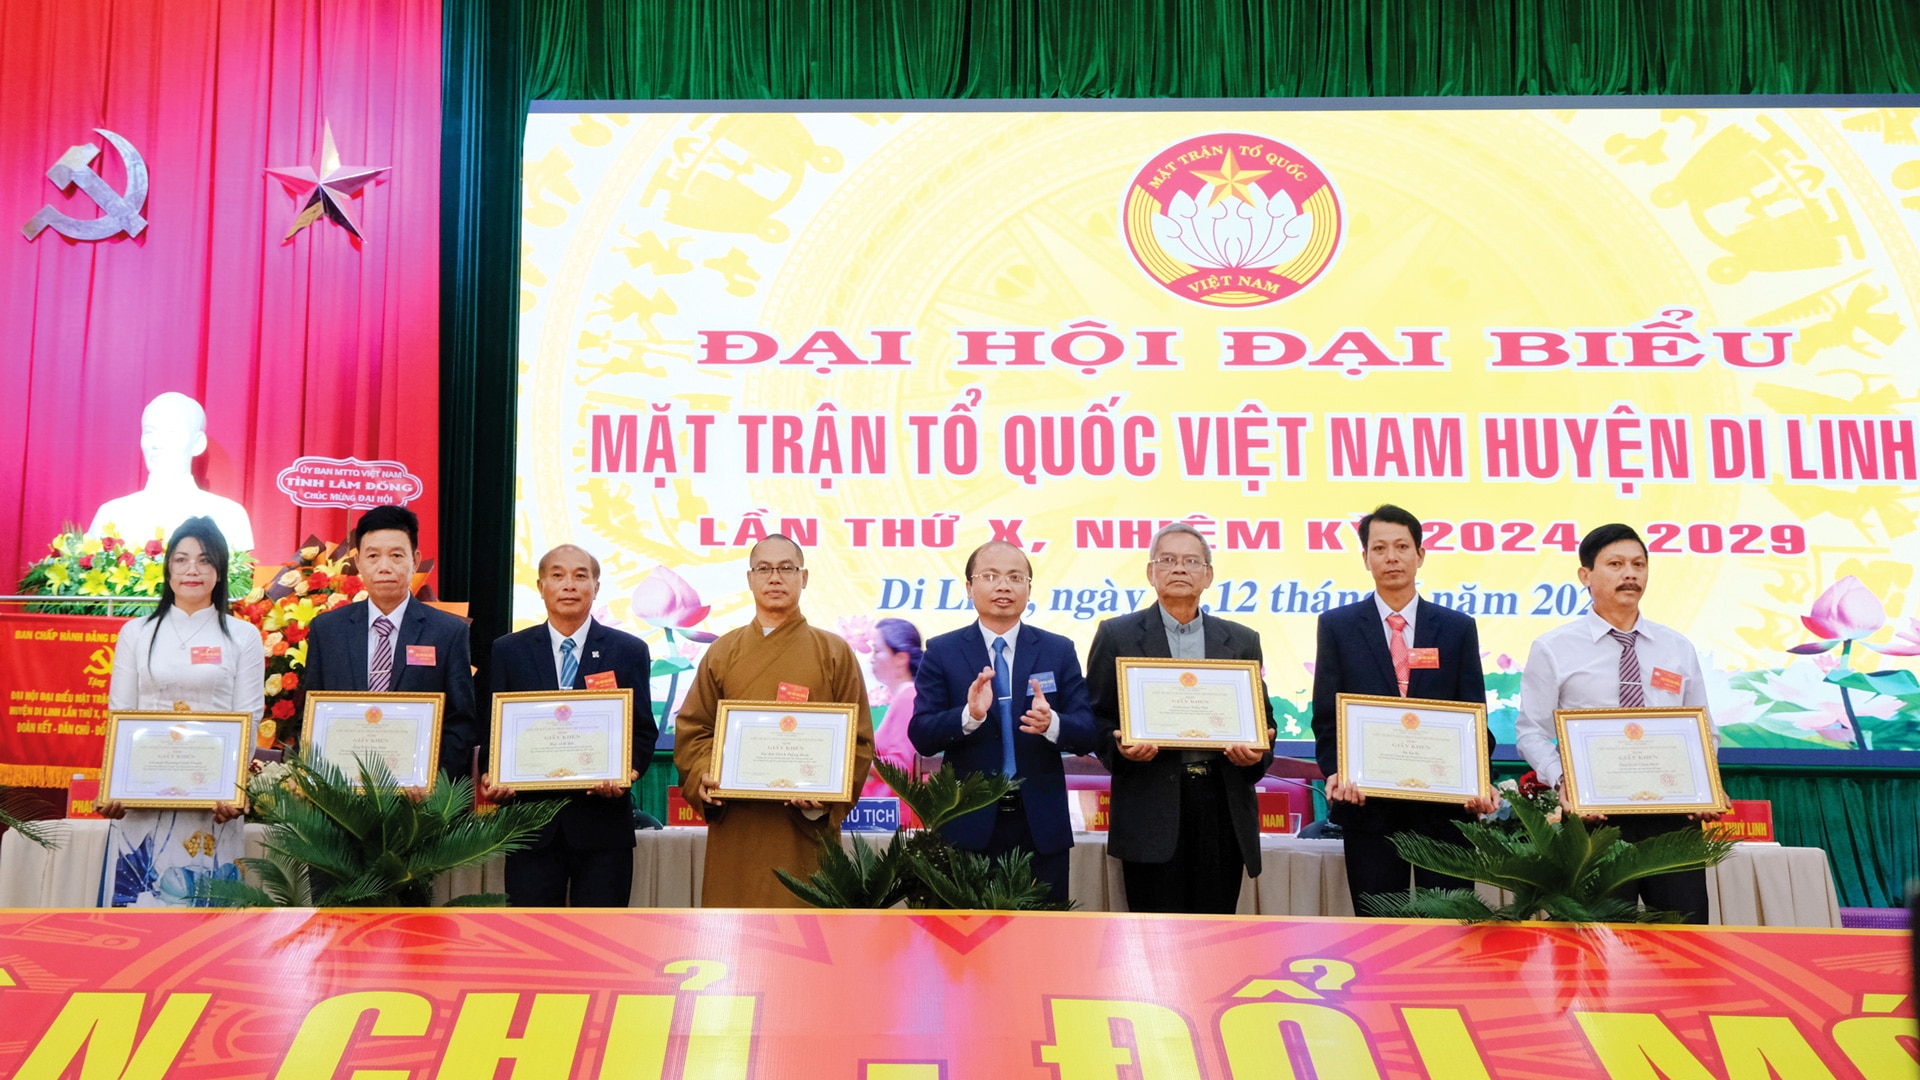  UBND huyện Di Linh tặng Giấy khen cho các cá nhân có thành tích xuất sắc trong công tác Mặt trận nhiệm kỳ 2019 - 2024